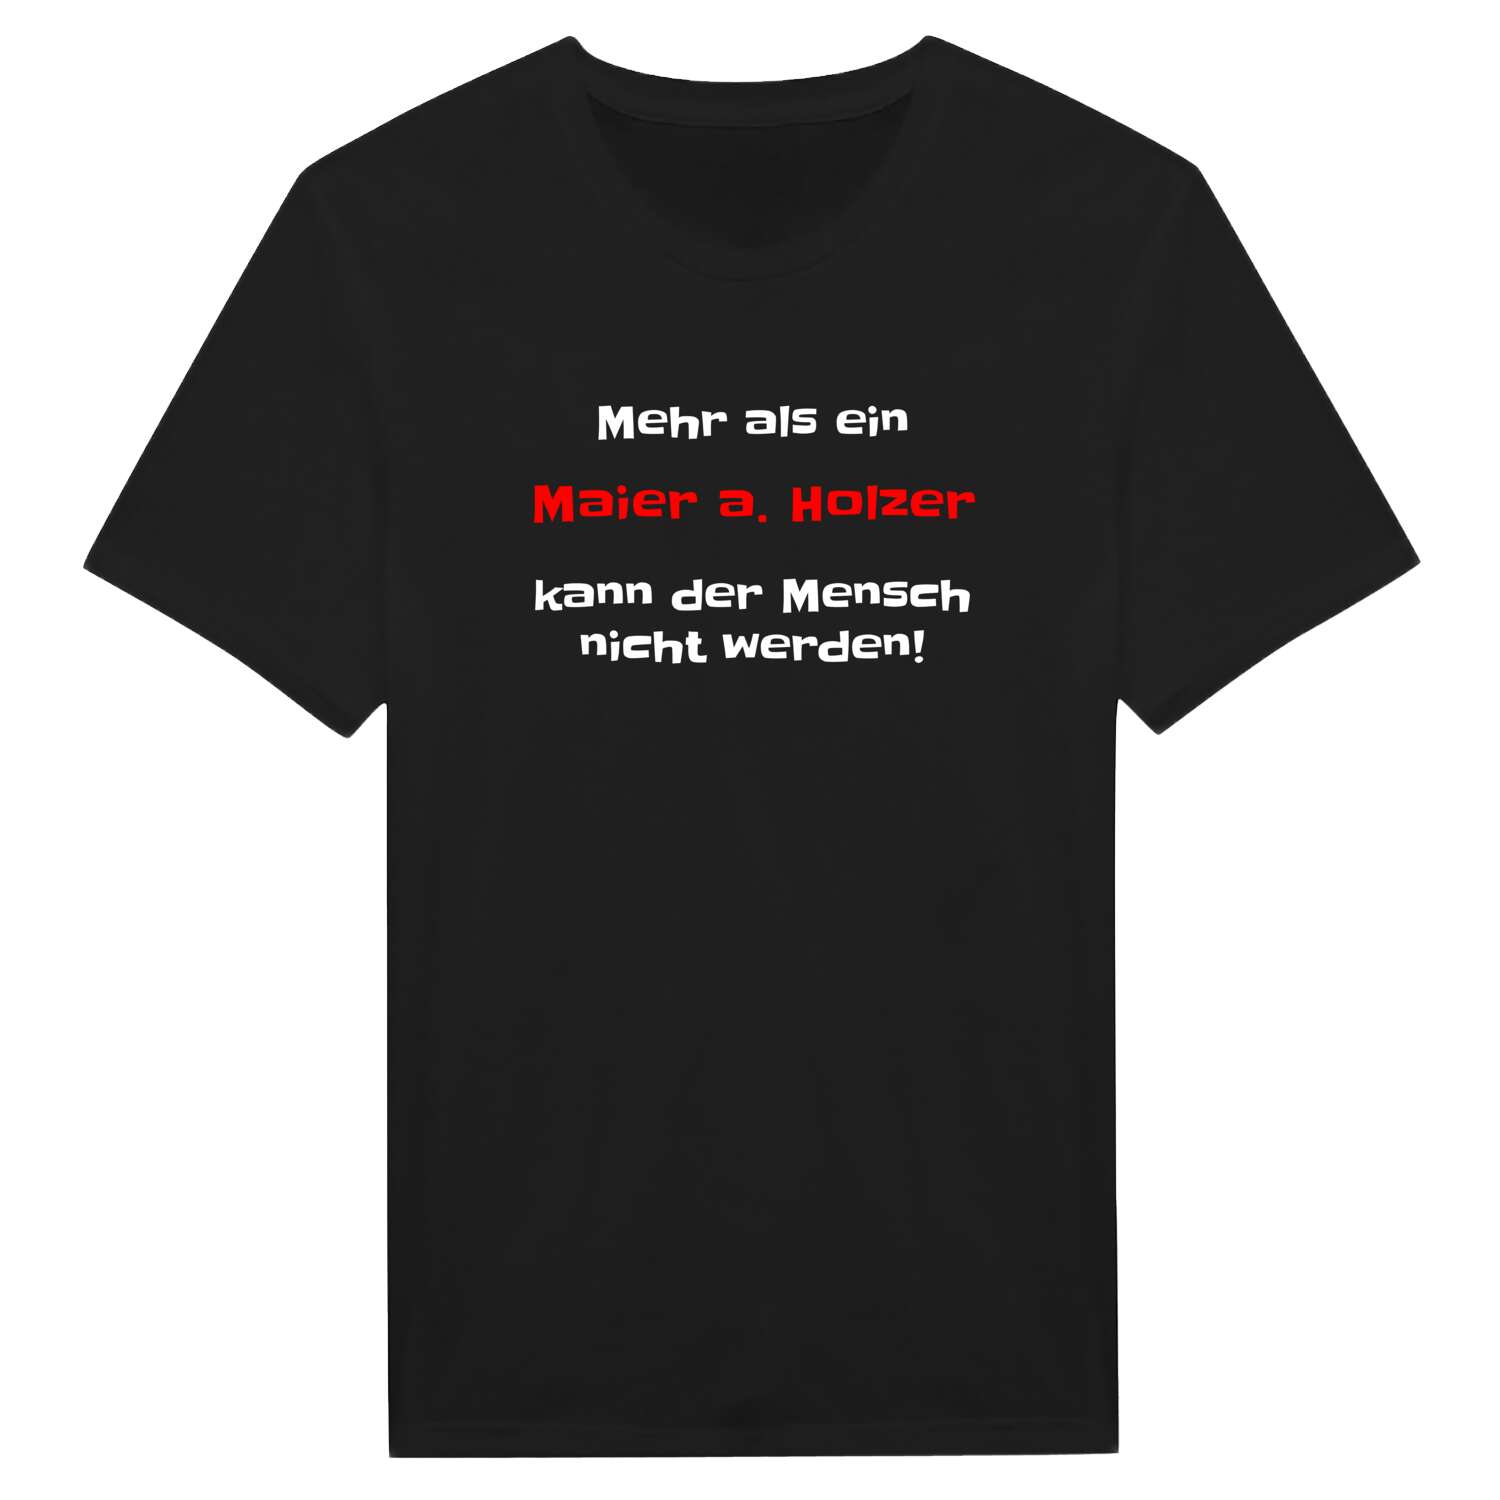 Maier a. Holz T-Shirt »Mehr als ein«